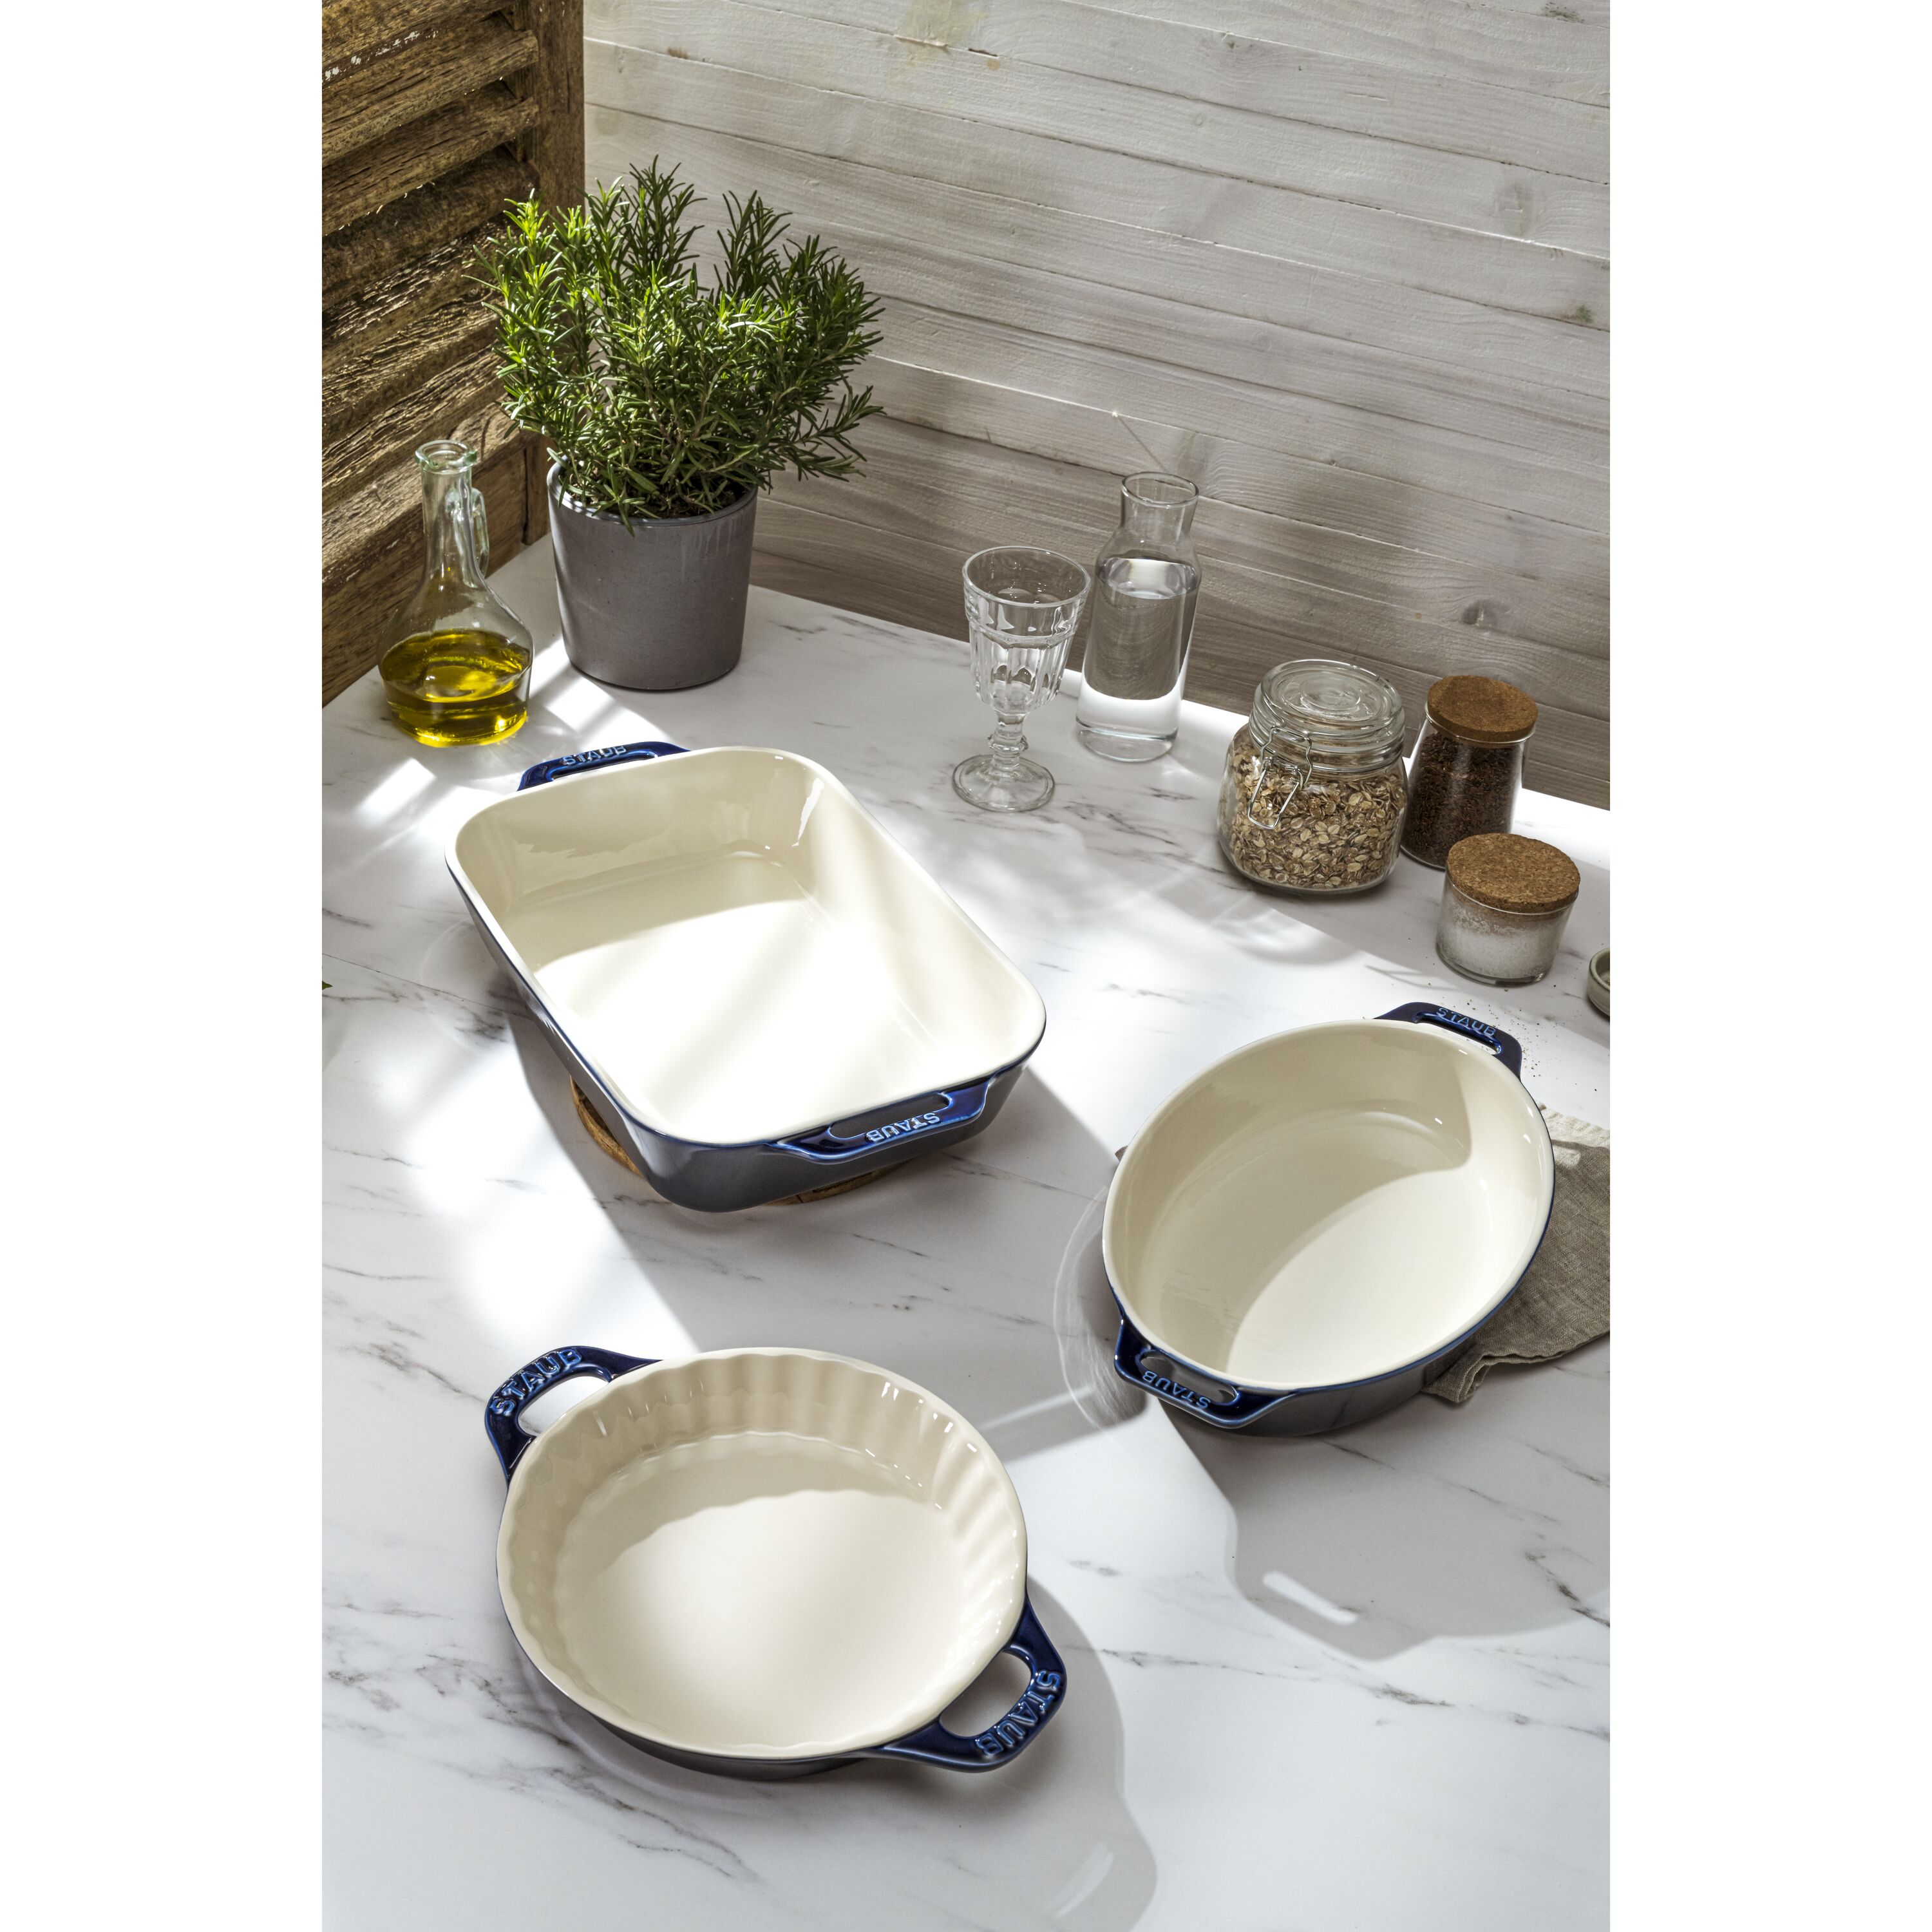 STAUB Ceramics 3-pc Rectangular Baking Dish Set - Bed Bath & Beyond -  34832519